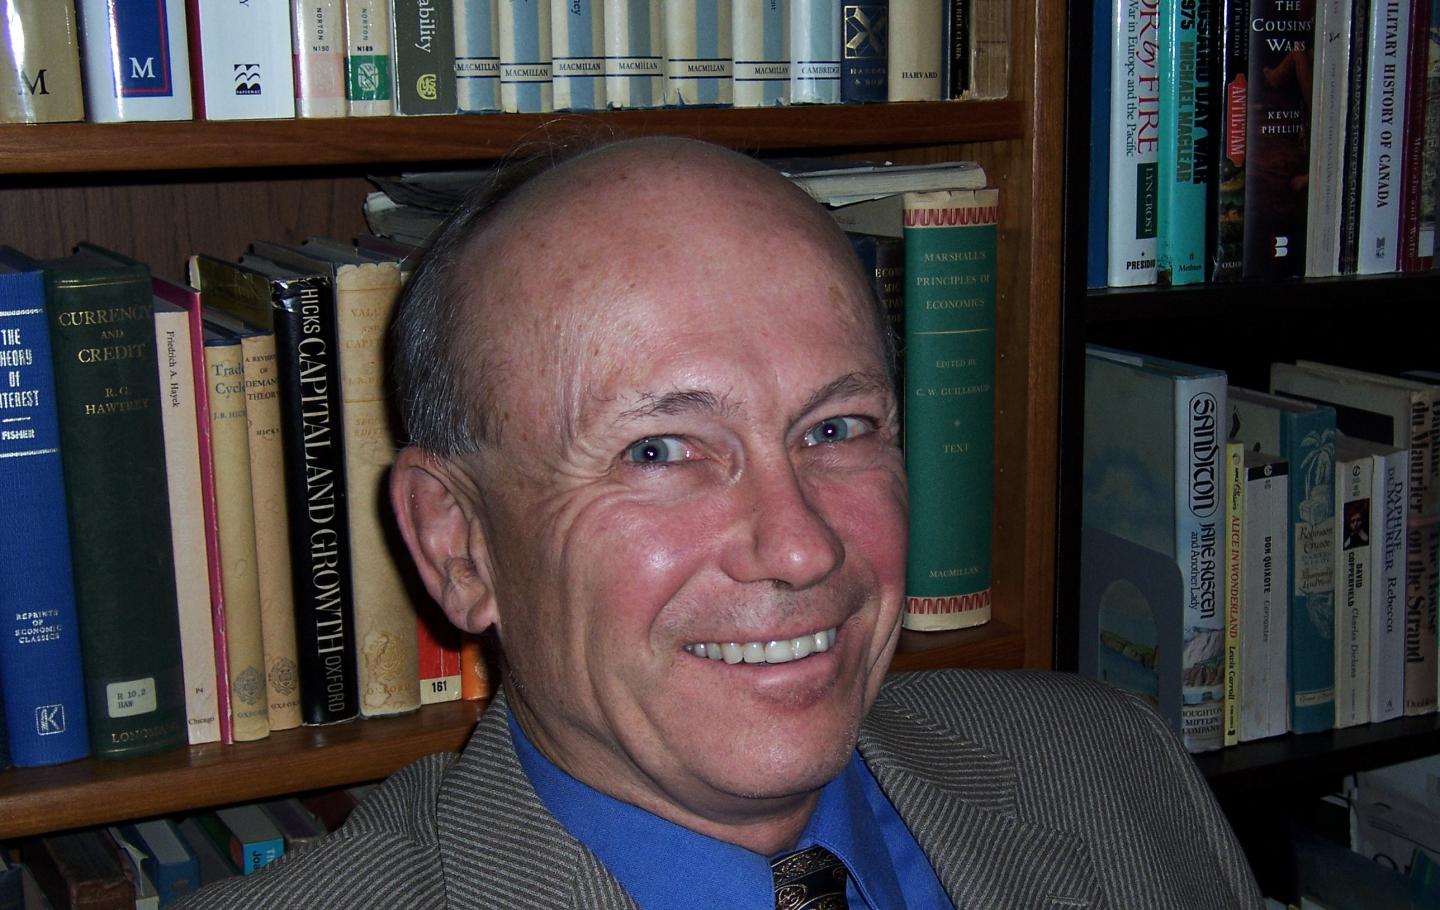 Peter Howitt, winner of the Frontiers of Knowledge Award in Economics.